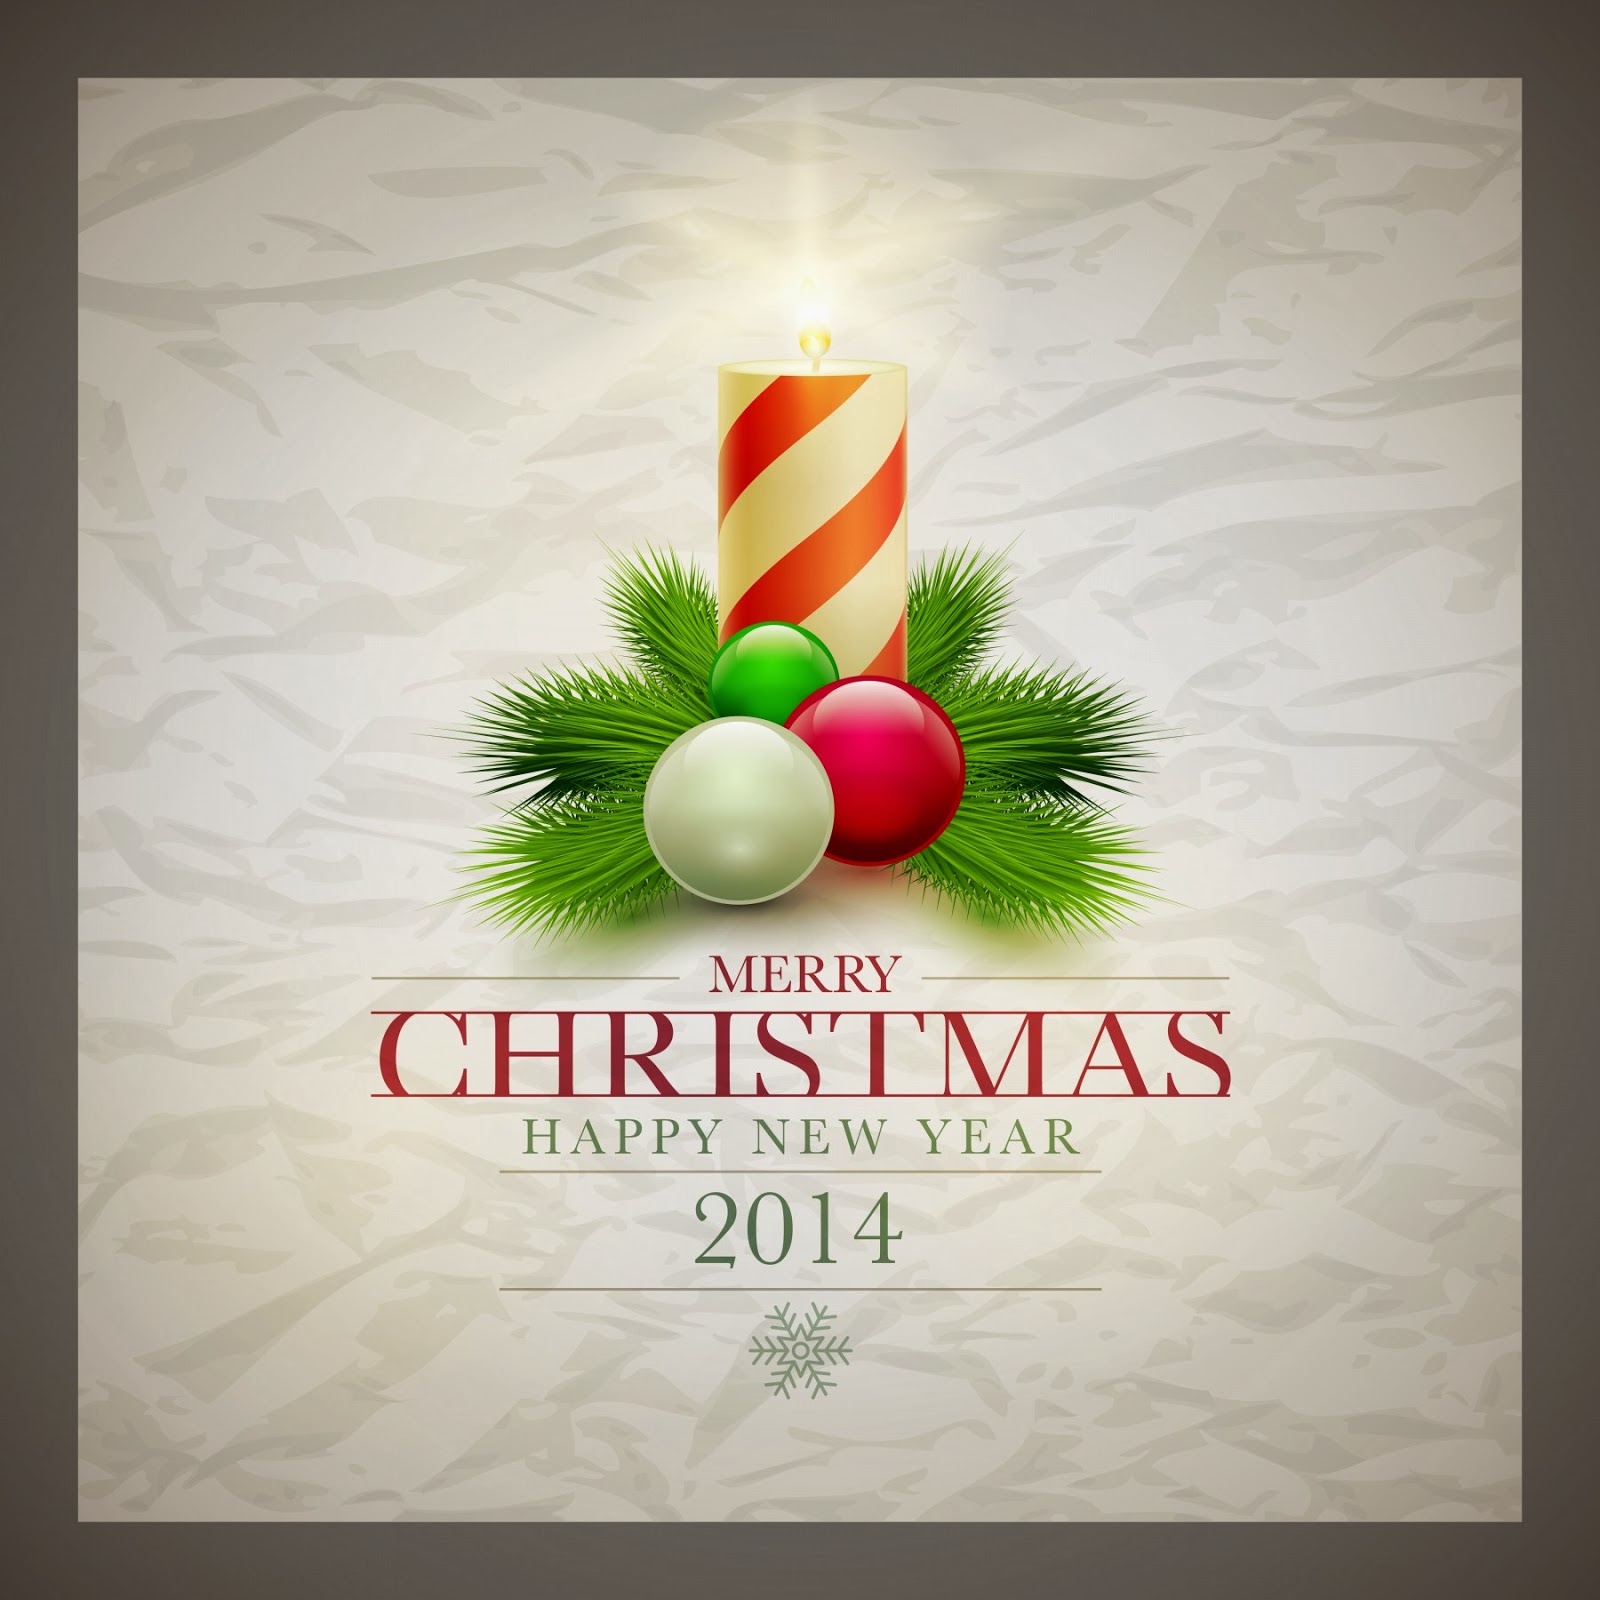 2014-Christmas-Greeting-Card-Free-Xmas-Holidays-Photo-4.jpg